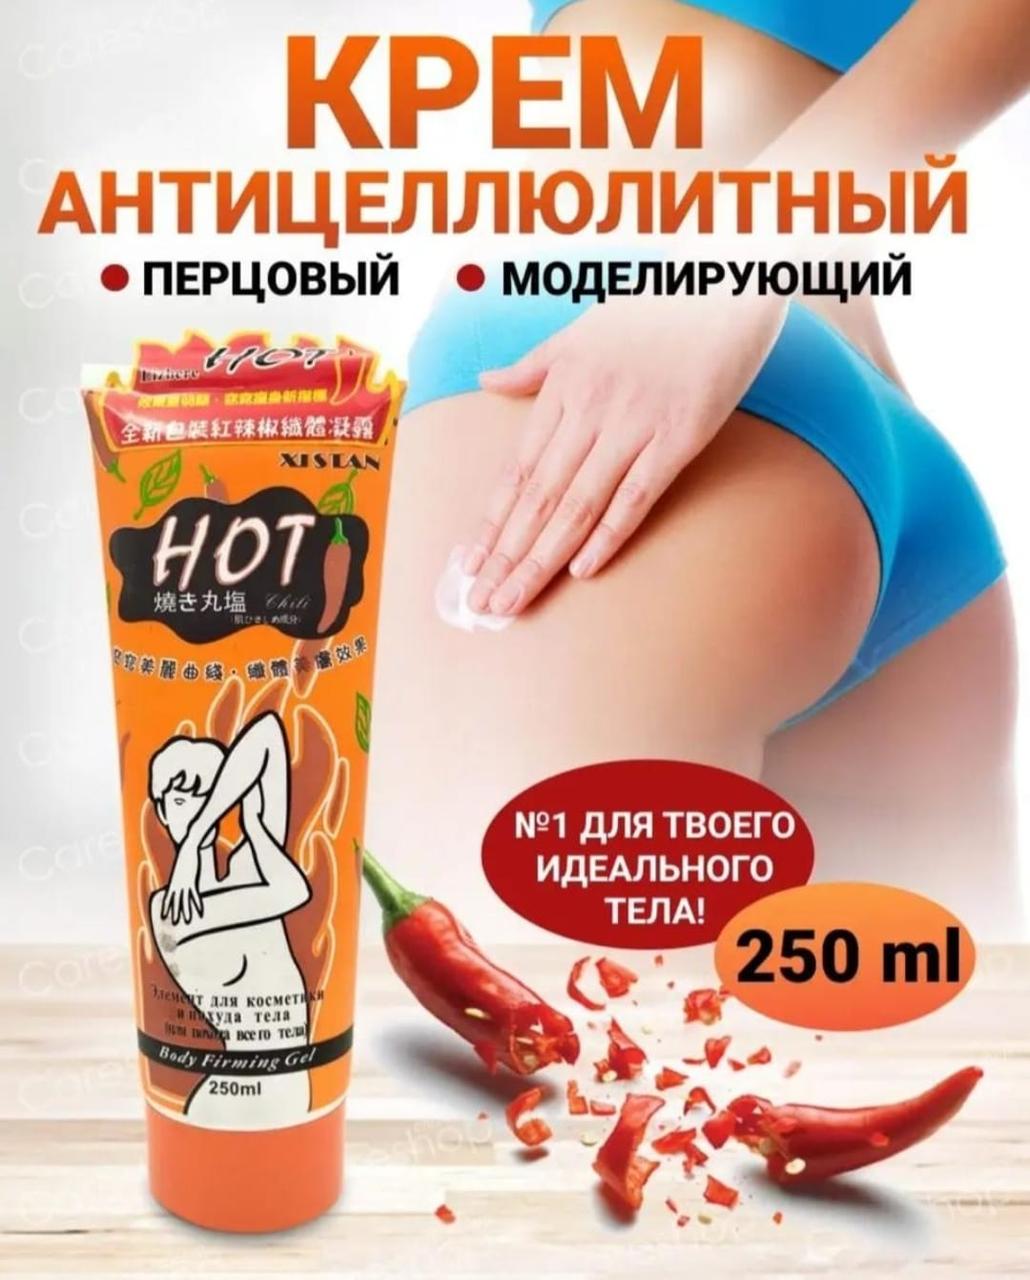 Гель антицеллюлитный Hot Chili для похудения